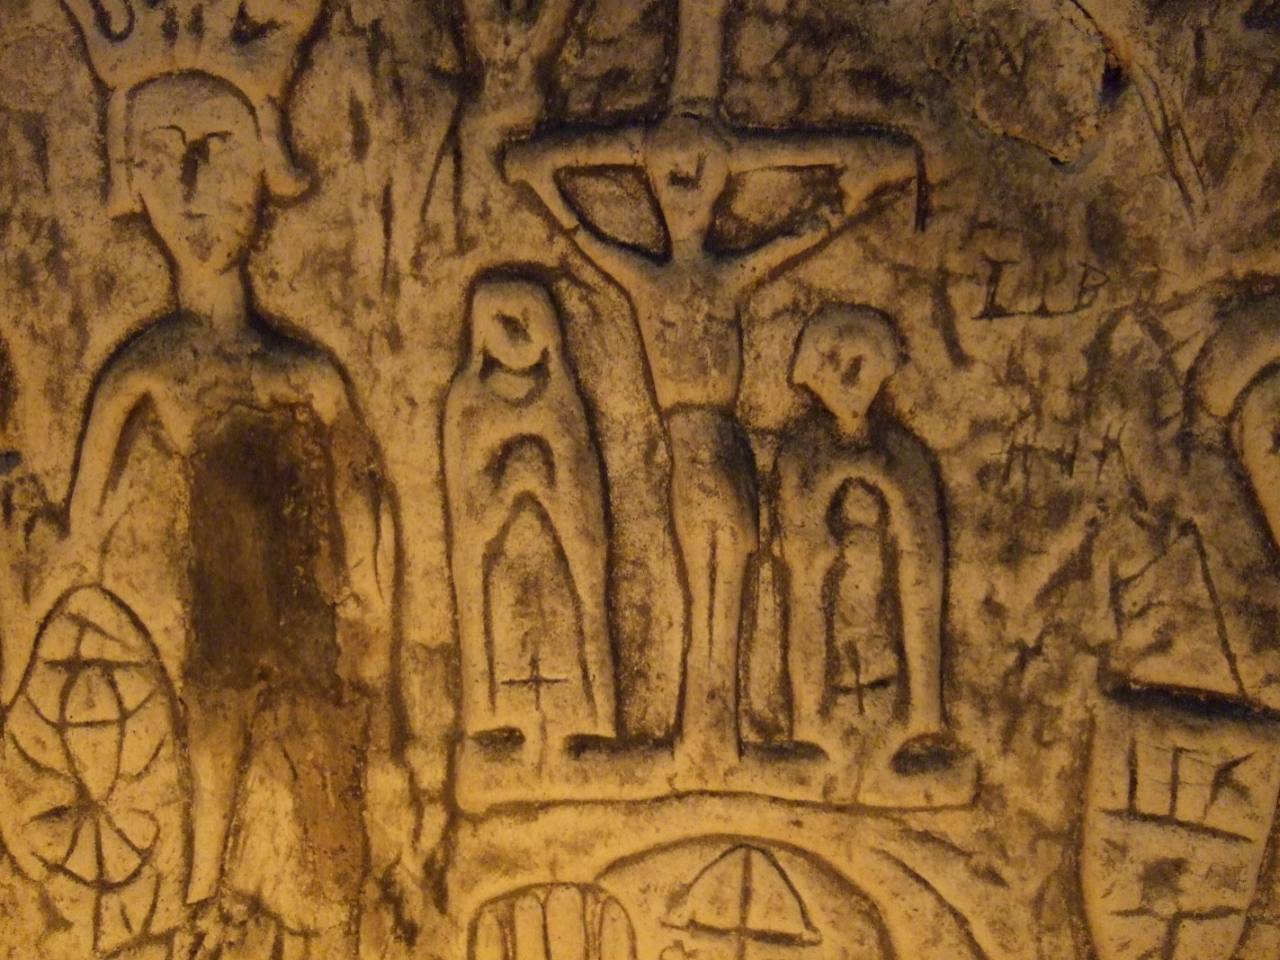 Symboles et gravures mystérieux dans la grotte artificielle de Royston 5